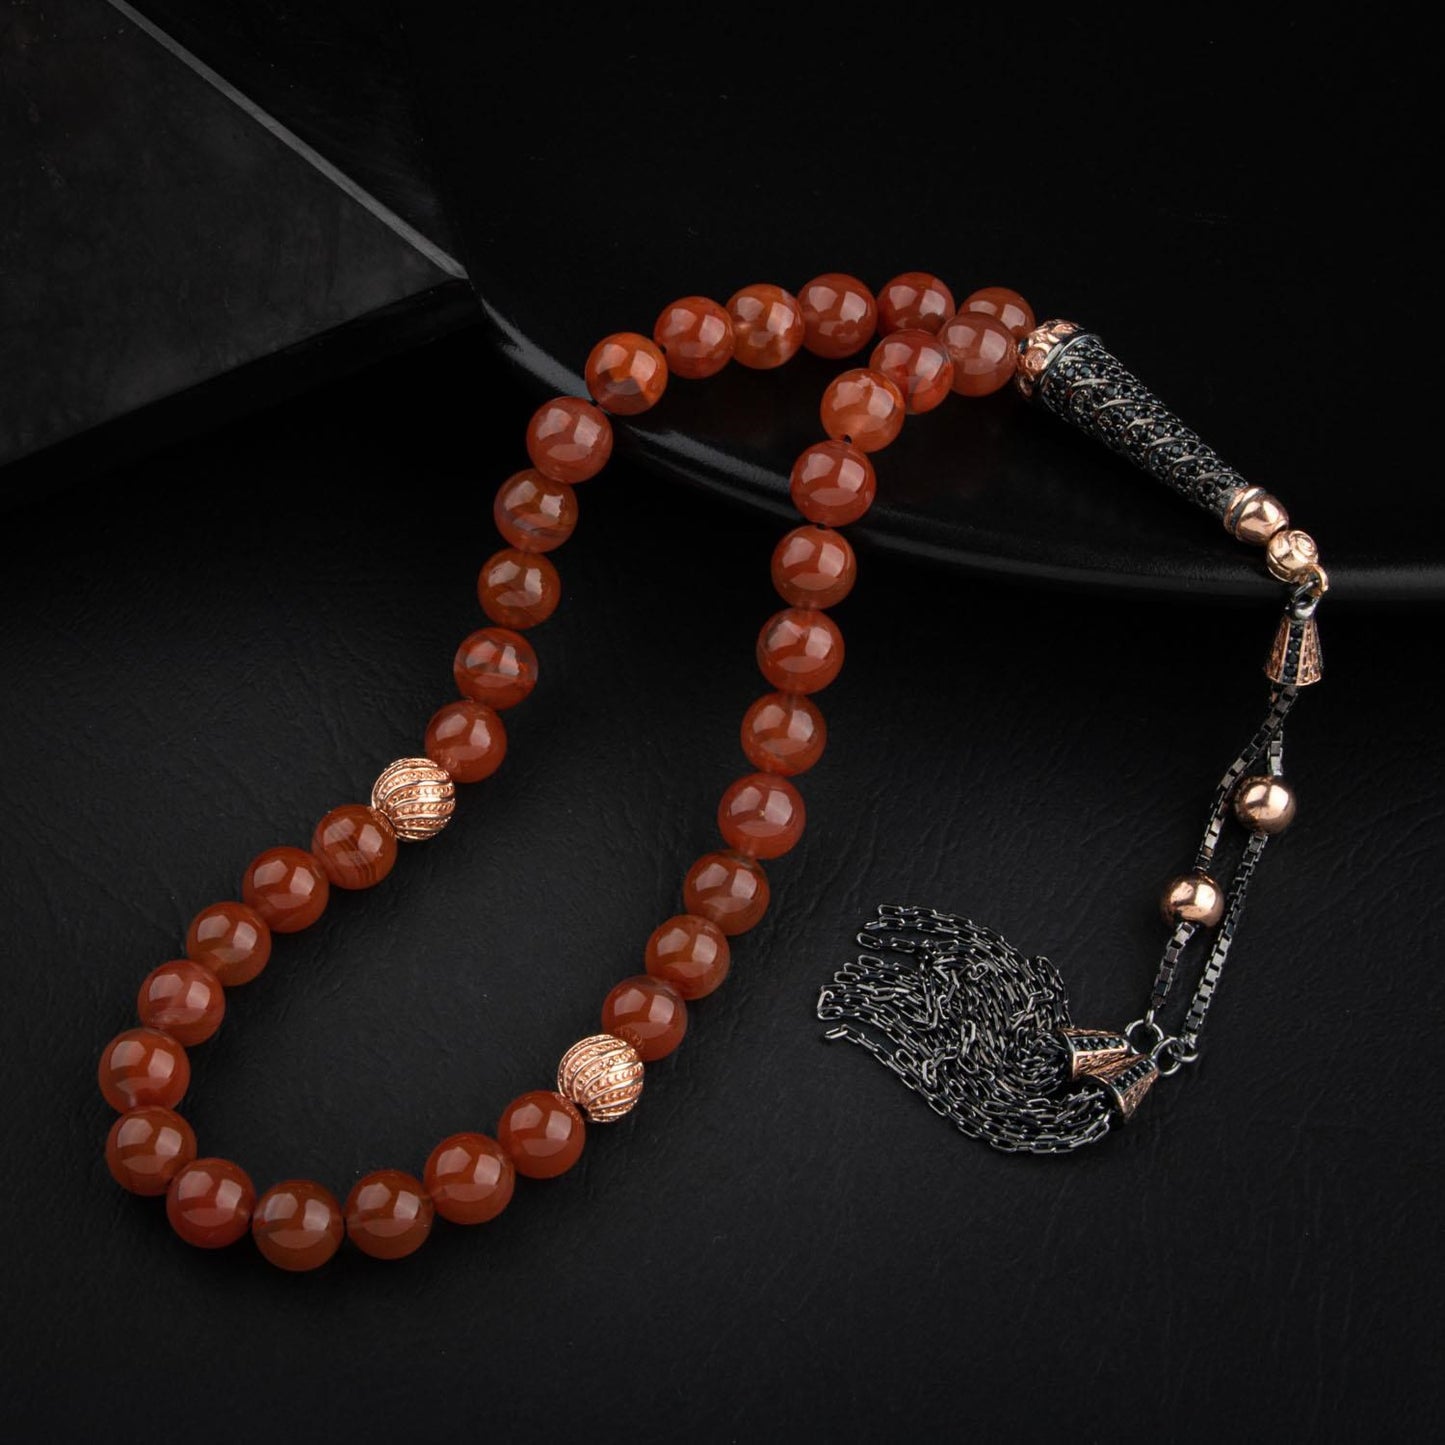 Yemen Agate Gemstone Prayer Beads - 8mm /33pc